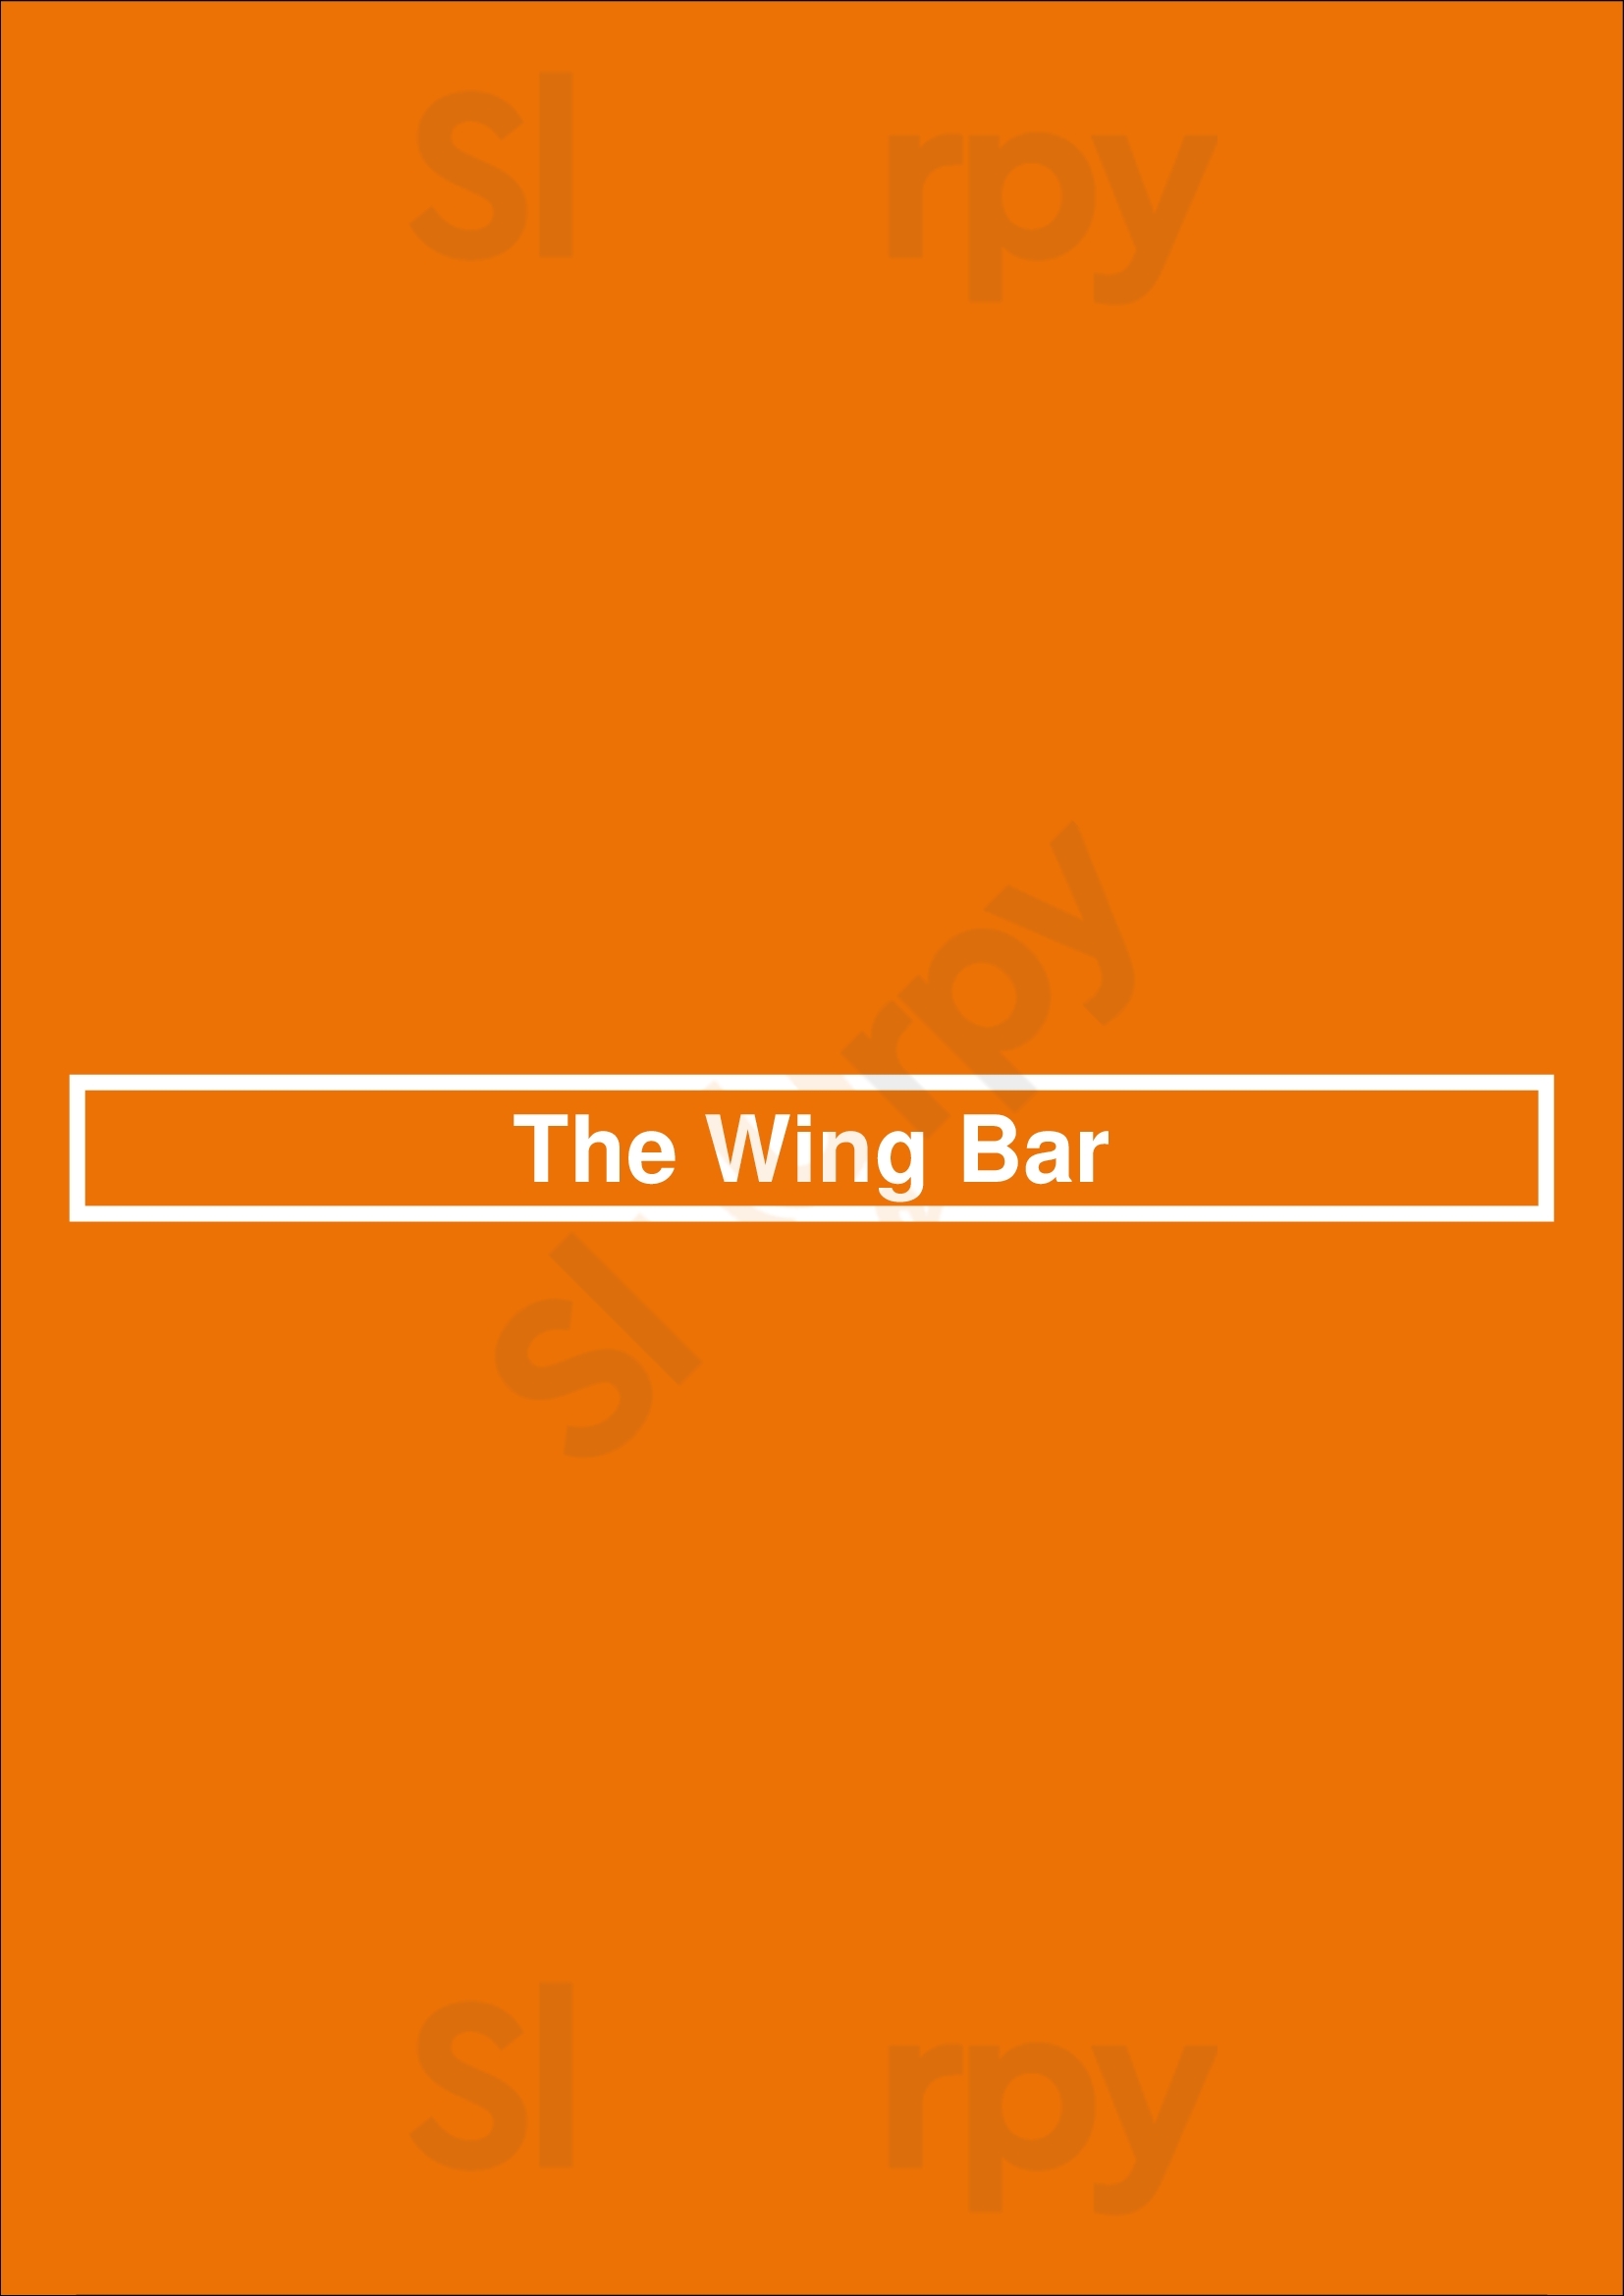 The Wing Bar Atlanta Menu - 1